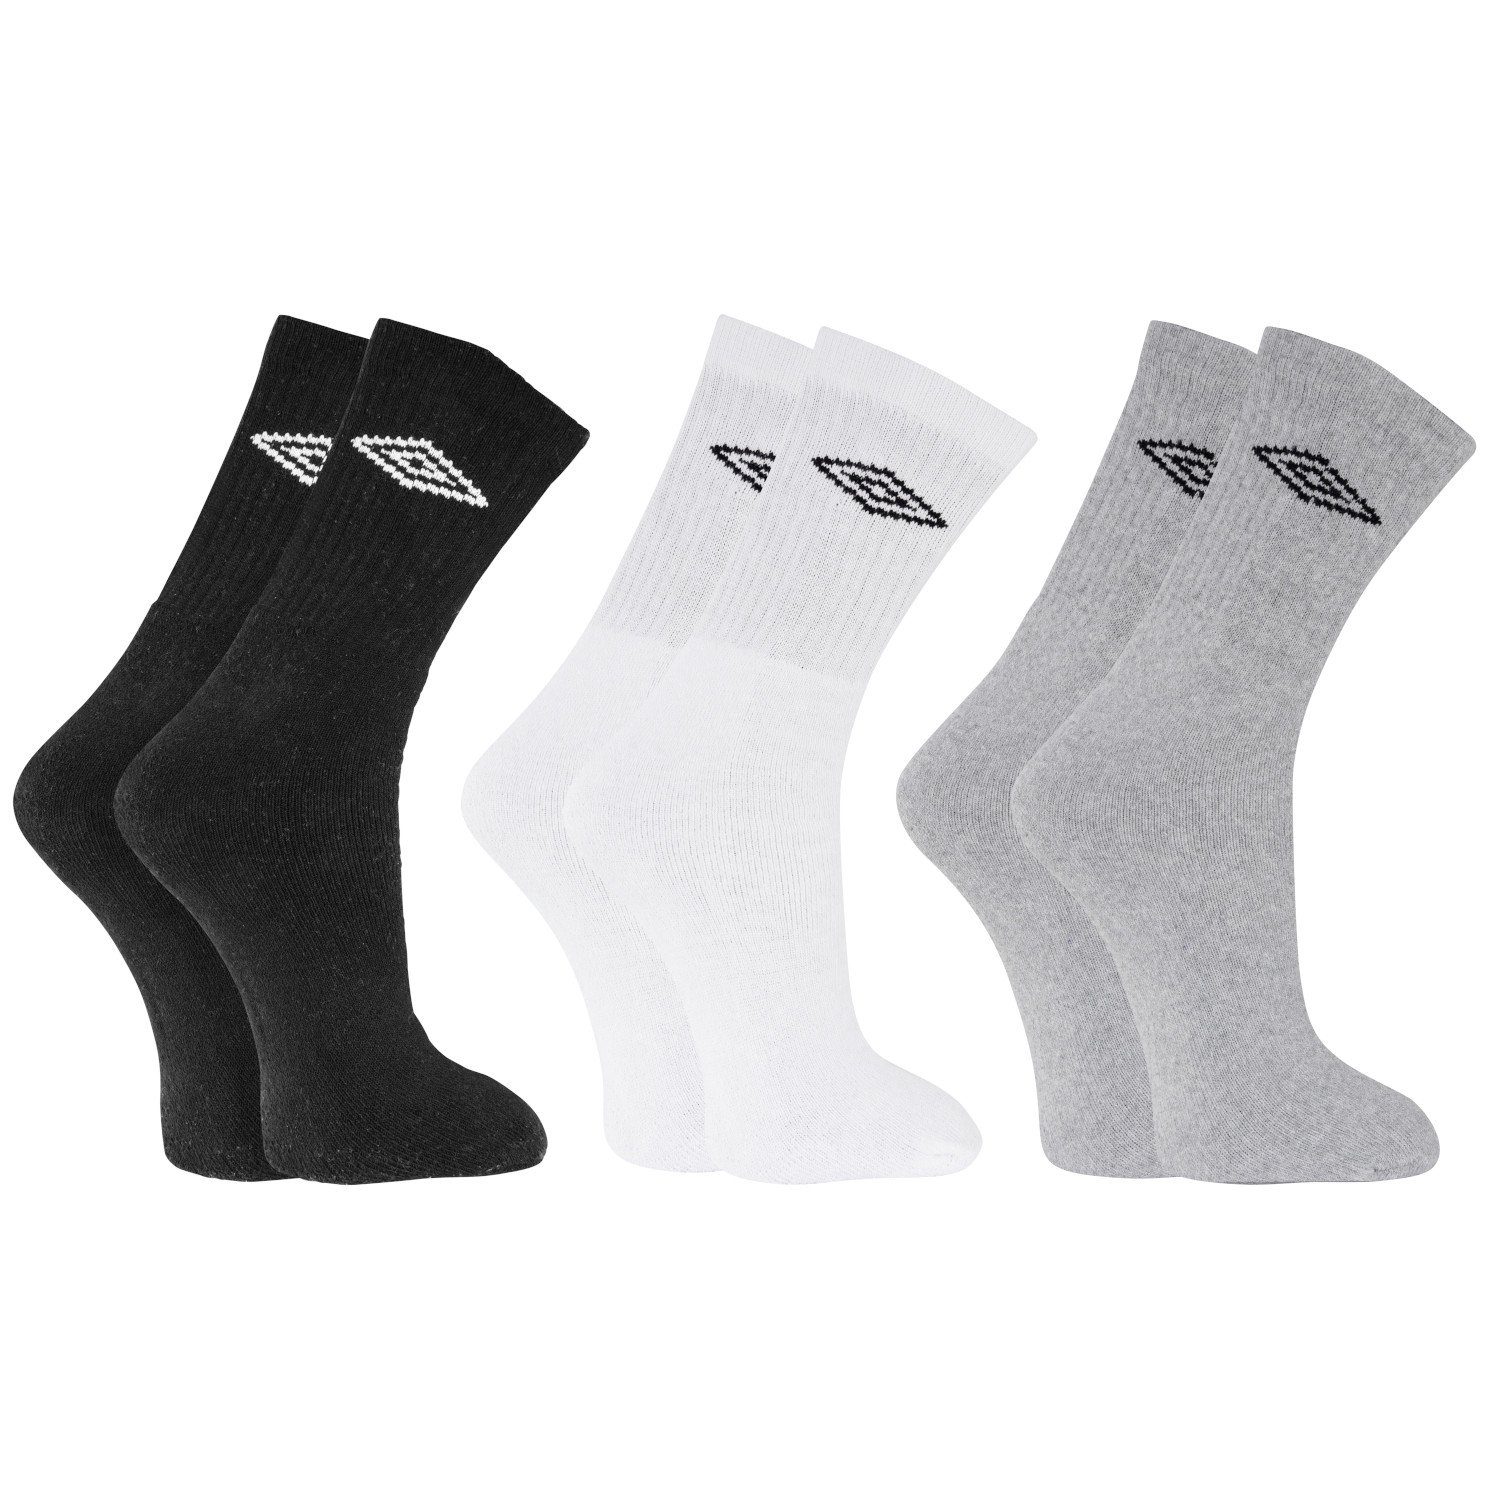 United Labels® Socken »Umbro Socken - Sportsocken Herren Männer Schwarz/Weiß/Grau  (3er Pack)« online kaufen | OTTO